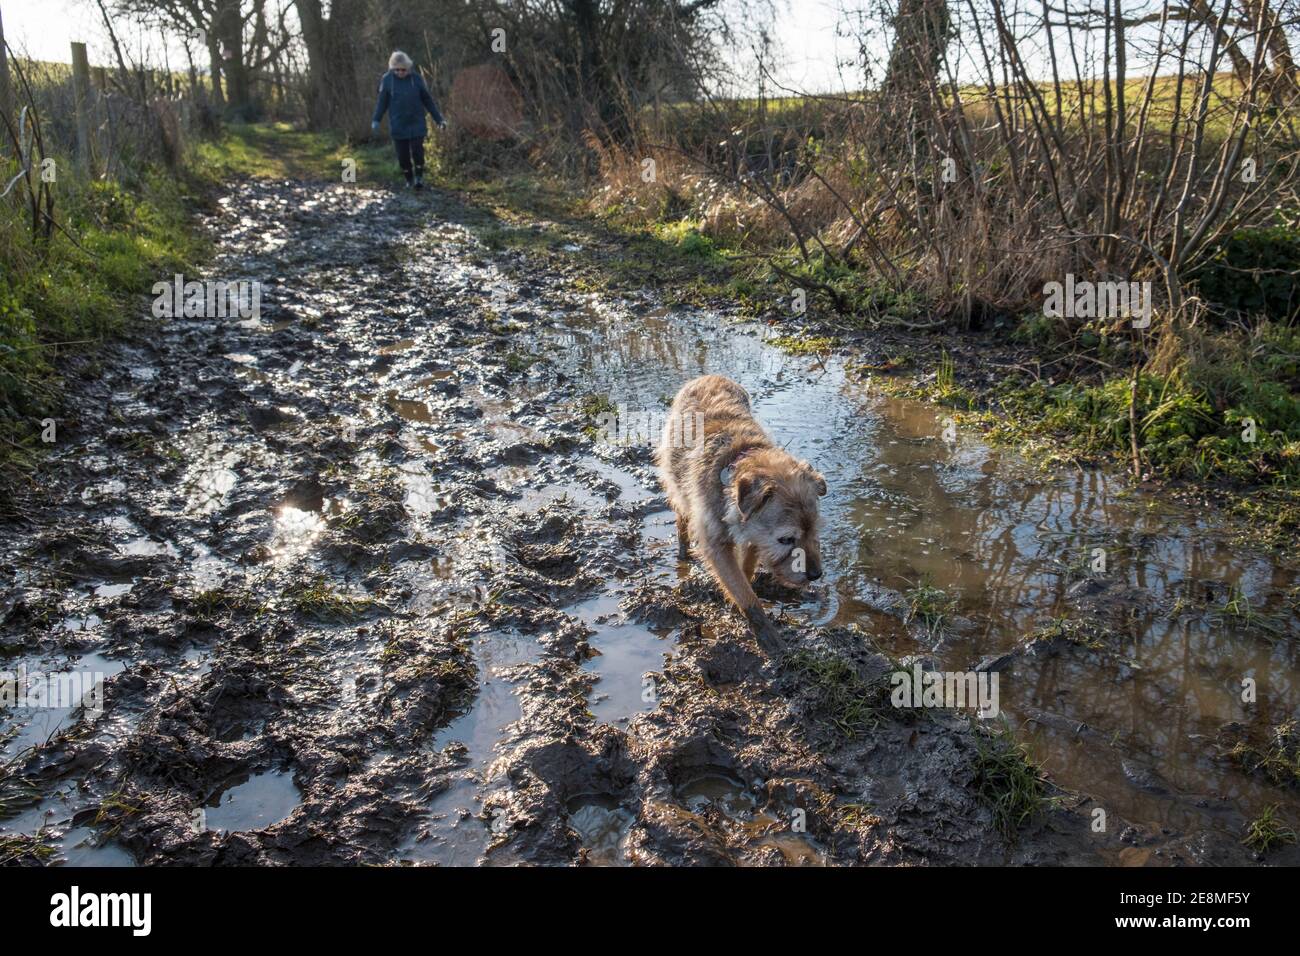 Chien marchant. Promenade en chien humide et boueux sur un sentier boueux. Suffolk, Royaume-Uni. Le terrier est un Border / Jack Russel cross âge 17 ans. Banque D'Images